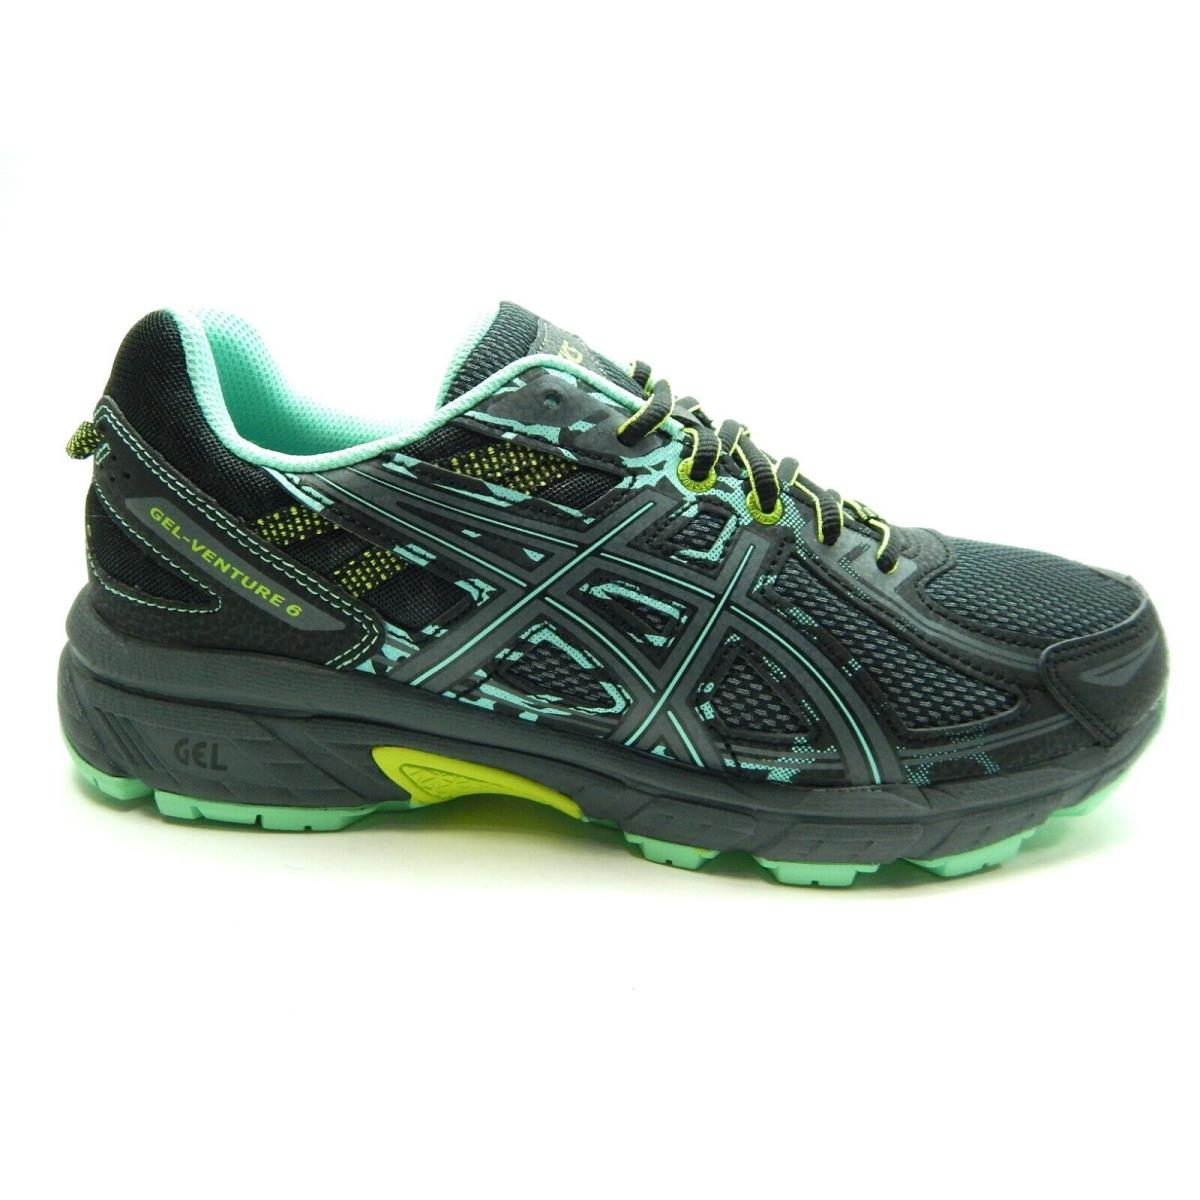 Asics Gel Venture 6 D Black Carbon Neon Lime Women Shoes Size 10.5